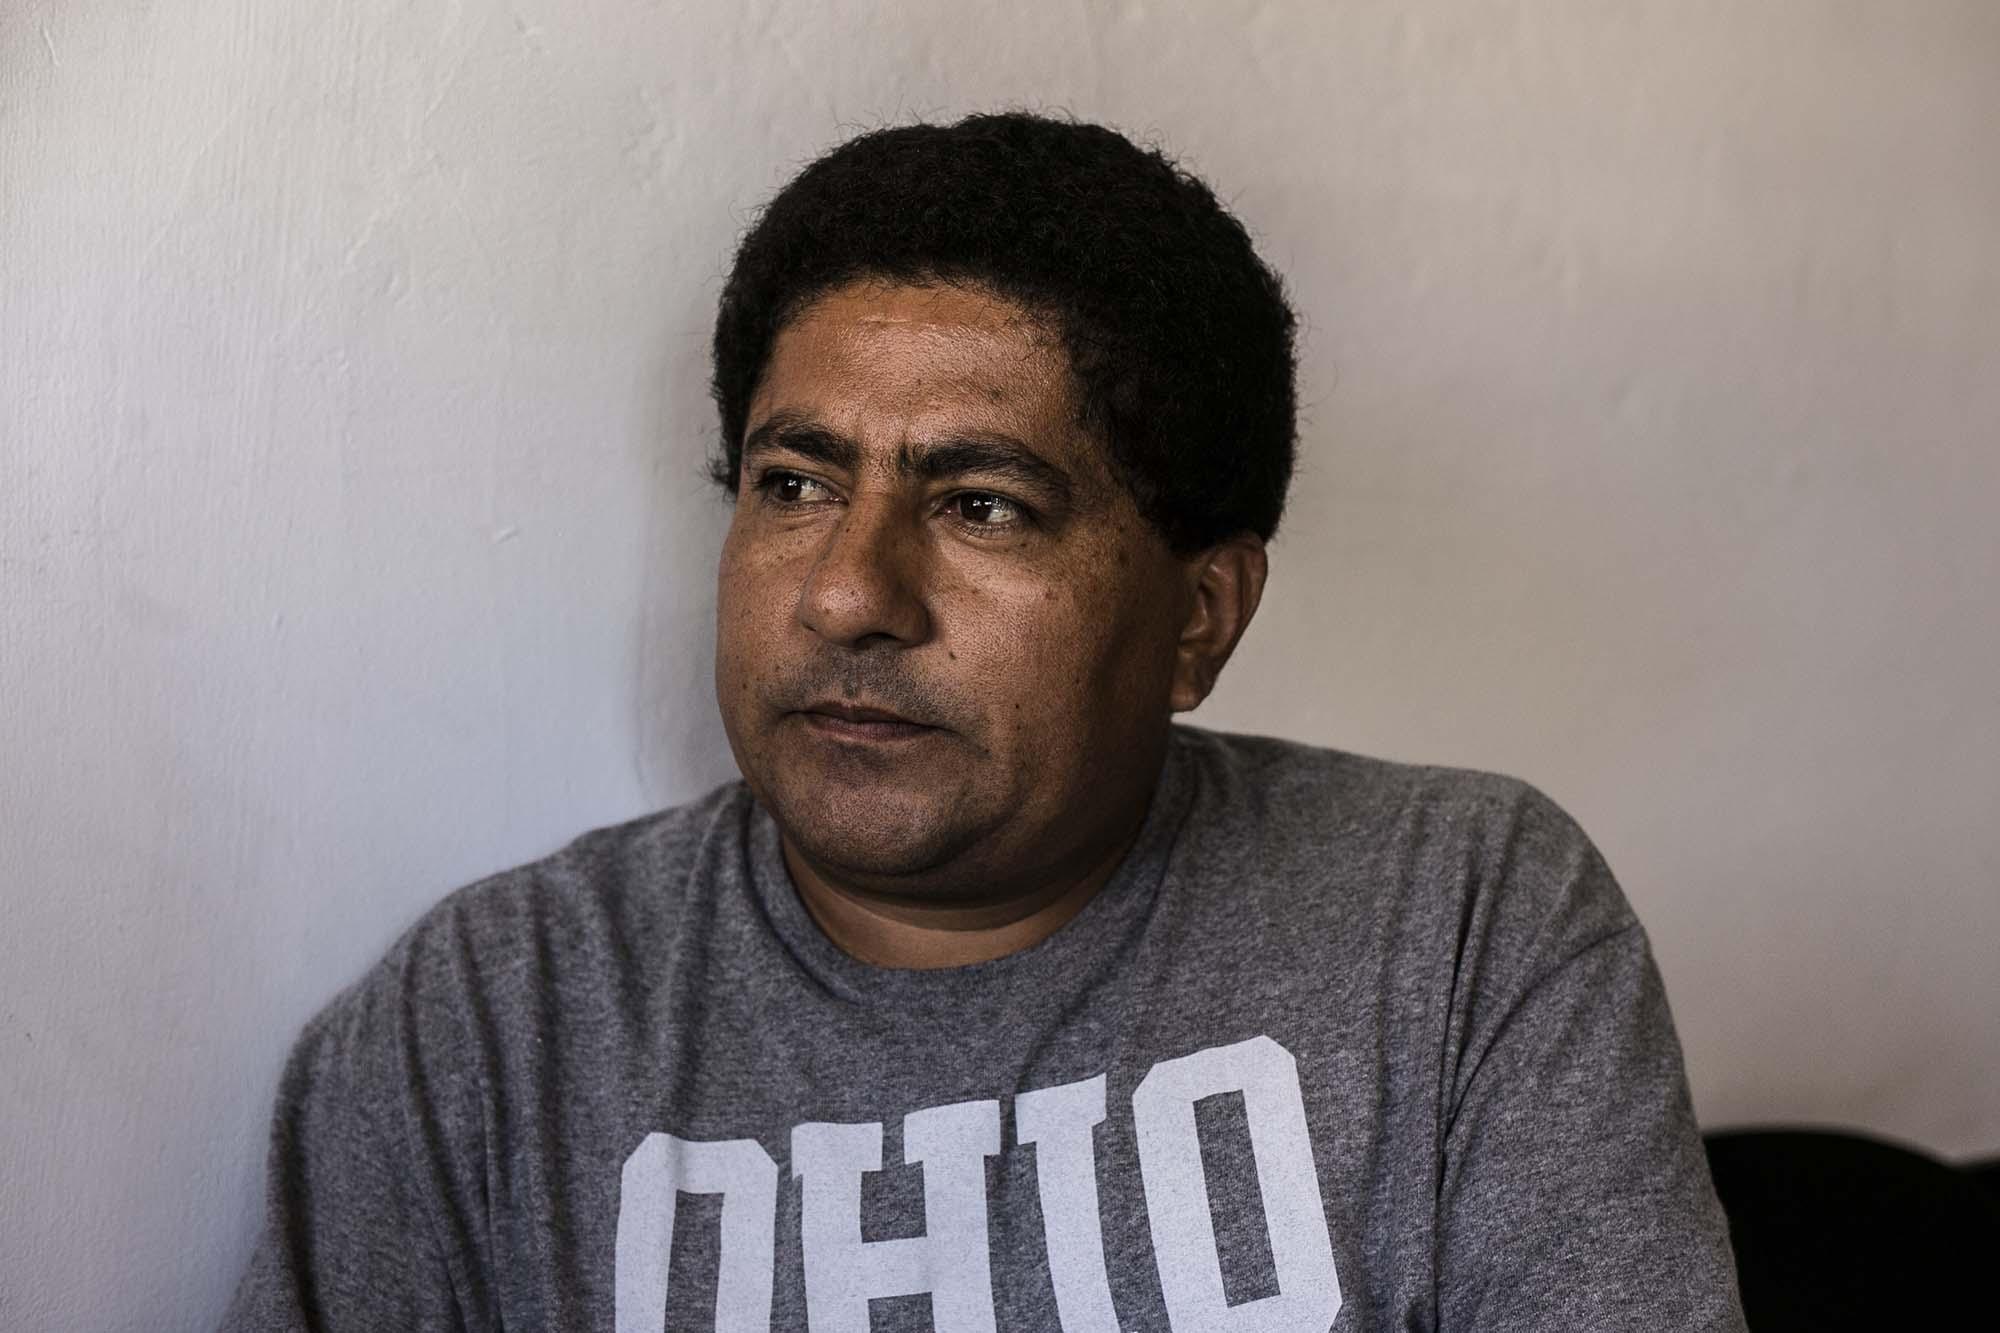 La Policía capturó a Heriberto Herrera Santillana el 24 de mayo de 2017. Siete meses después un tribunal lo declaró inocente del delito de extorsión. Él dice que denunciará a los policías por fraude procesal y simulación de delito.